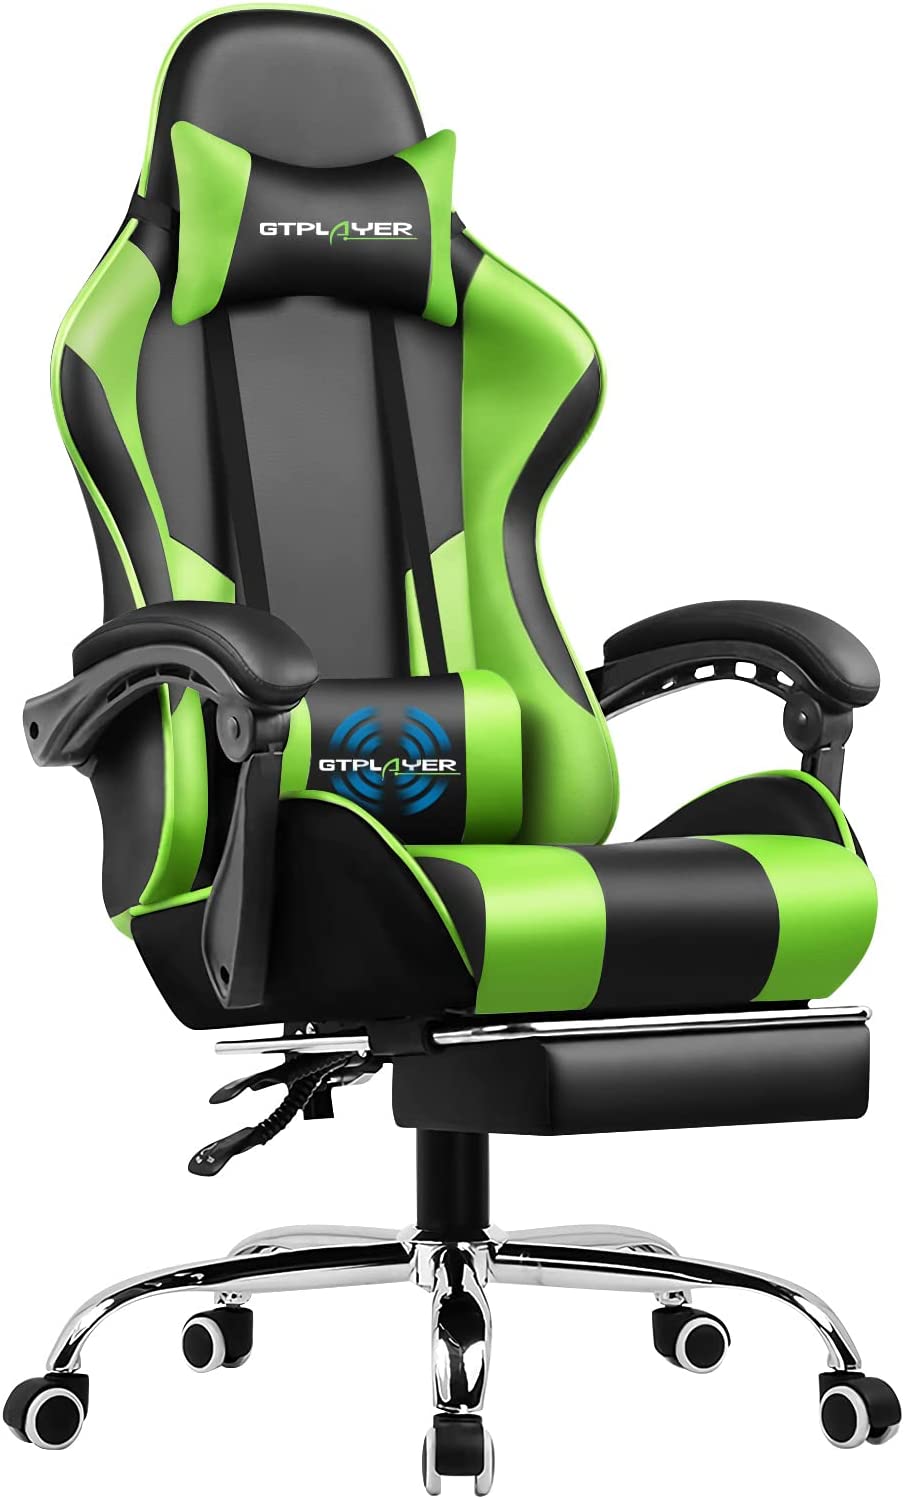 Herná stolička GTPLAYER, ergonomická kancelárska stolička s masážnou funkciou a opierkou na nohy, prepojenie s madlom, oceľová základňa, zelená